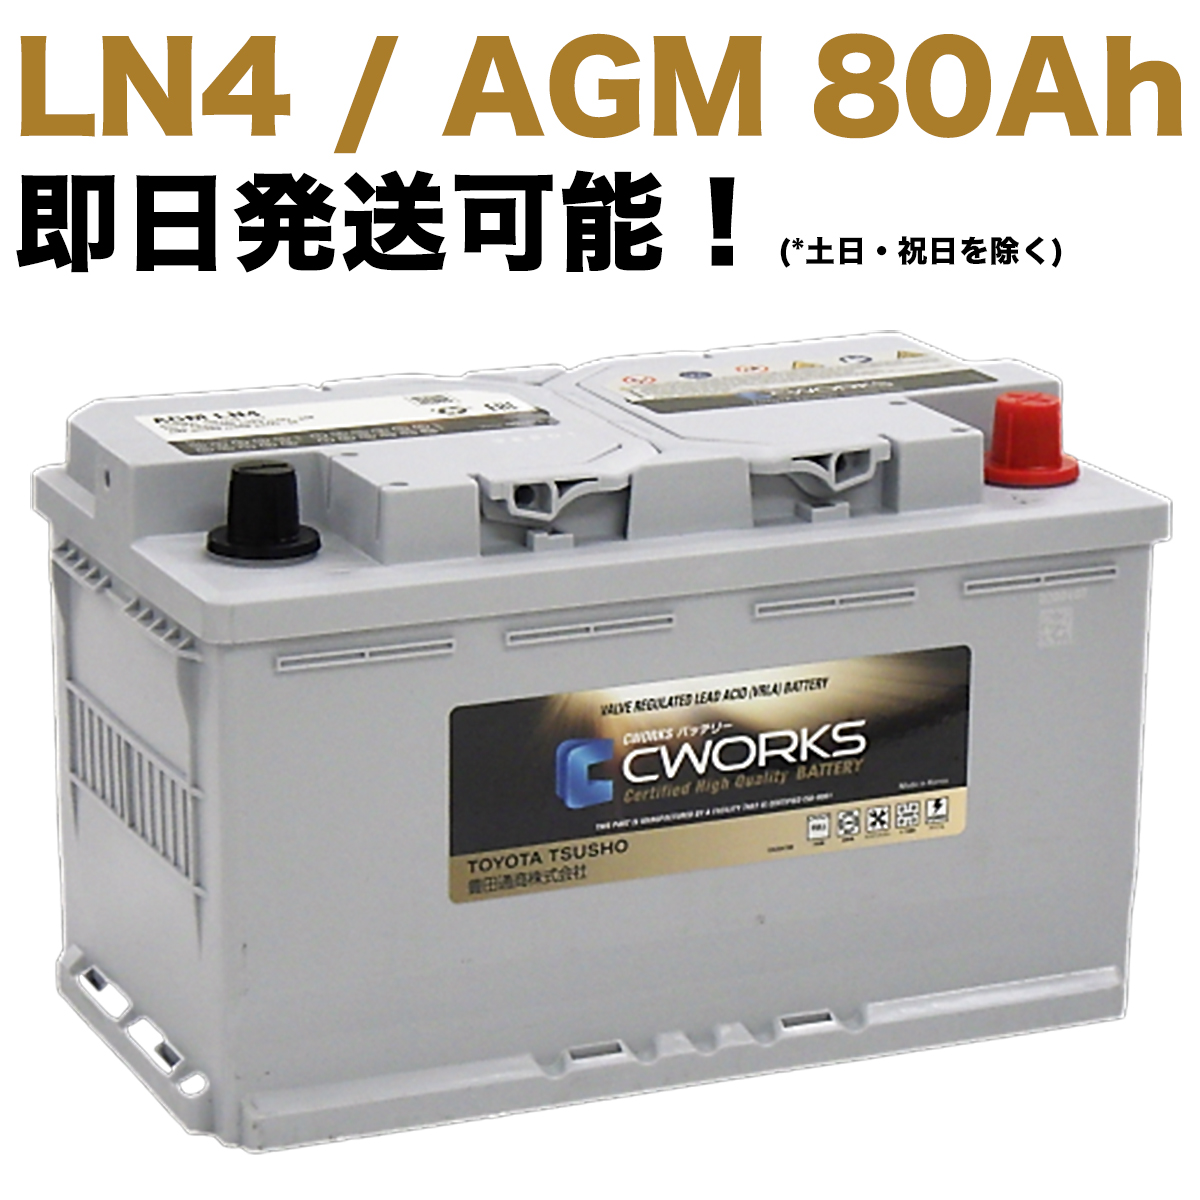 【保証付】新品 バッテリー L4 AGM 80Ah メルセデス ベンツ W463 G350 LDA-463346 Gクラス ゲレンデ A001982810828 A0009822108 LN4 CWORKS 580901084｜e-benzparts